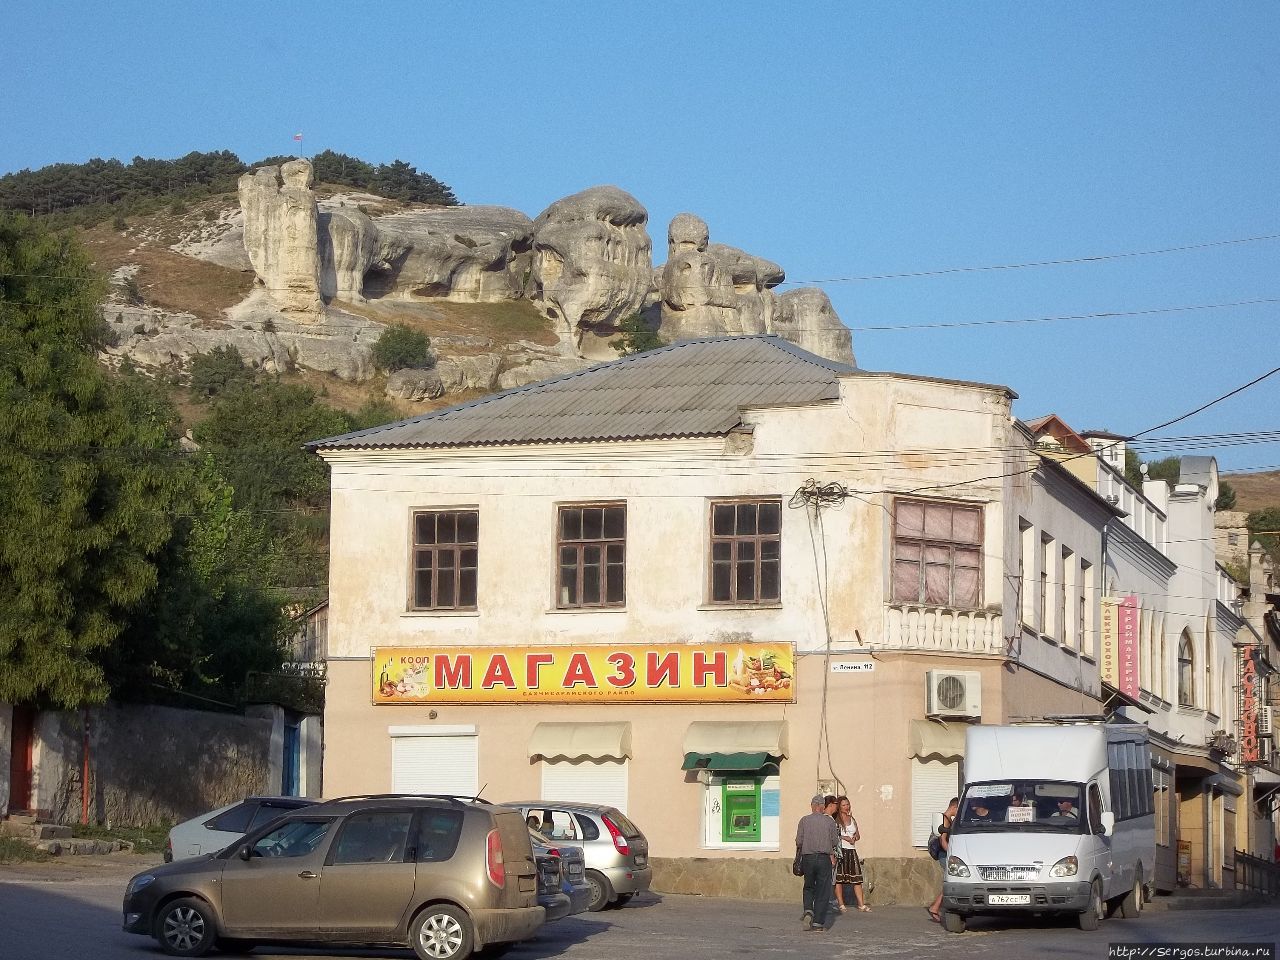 над Старым Бахчисараем нависают изъеденные стихиями живописные горы Республика Крым, Россия